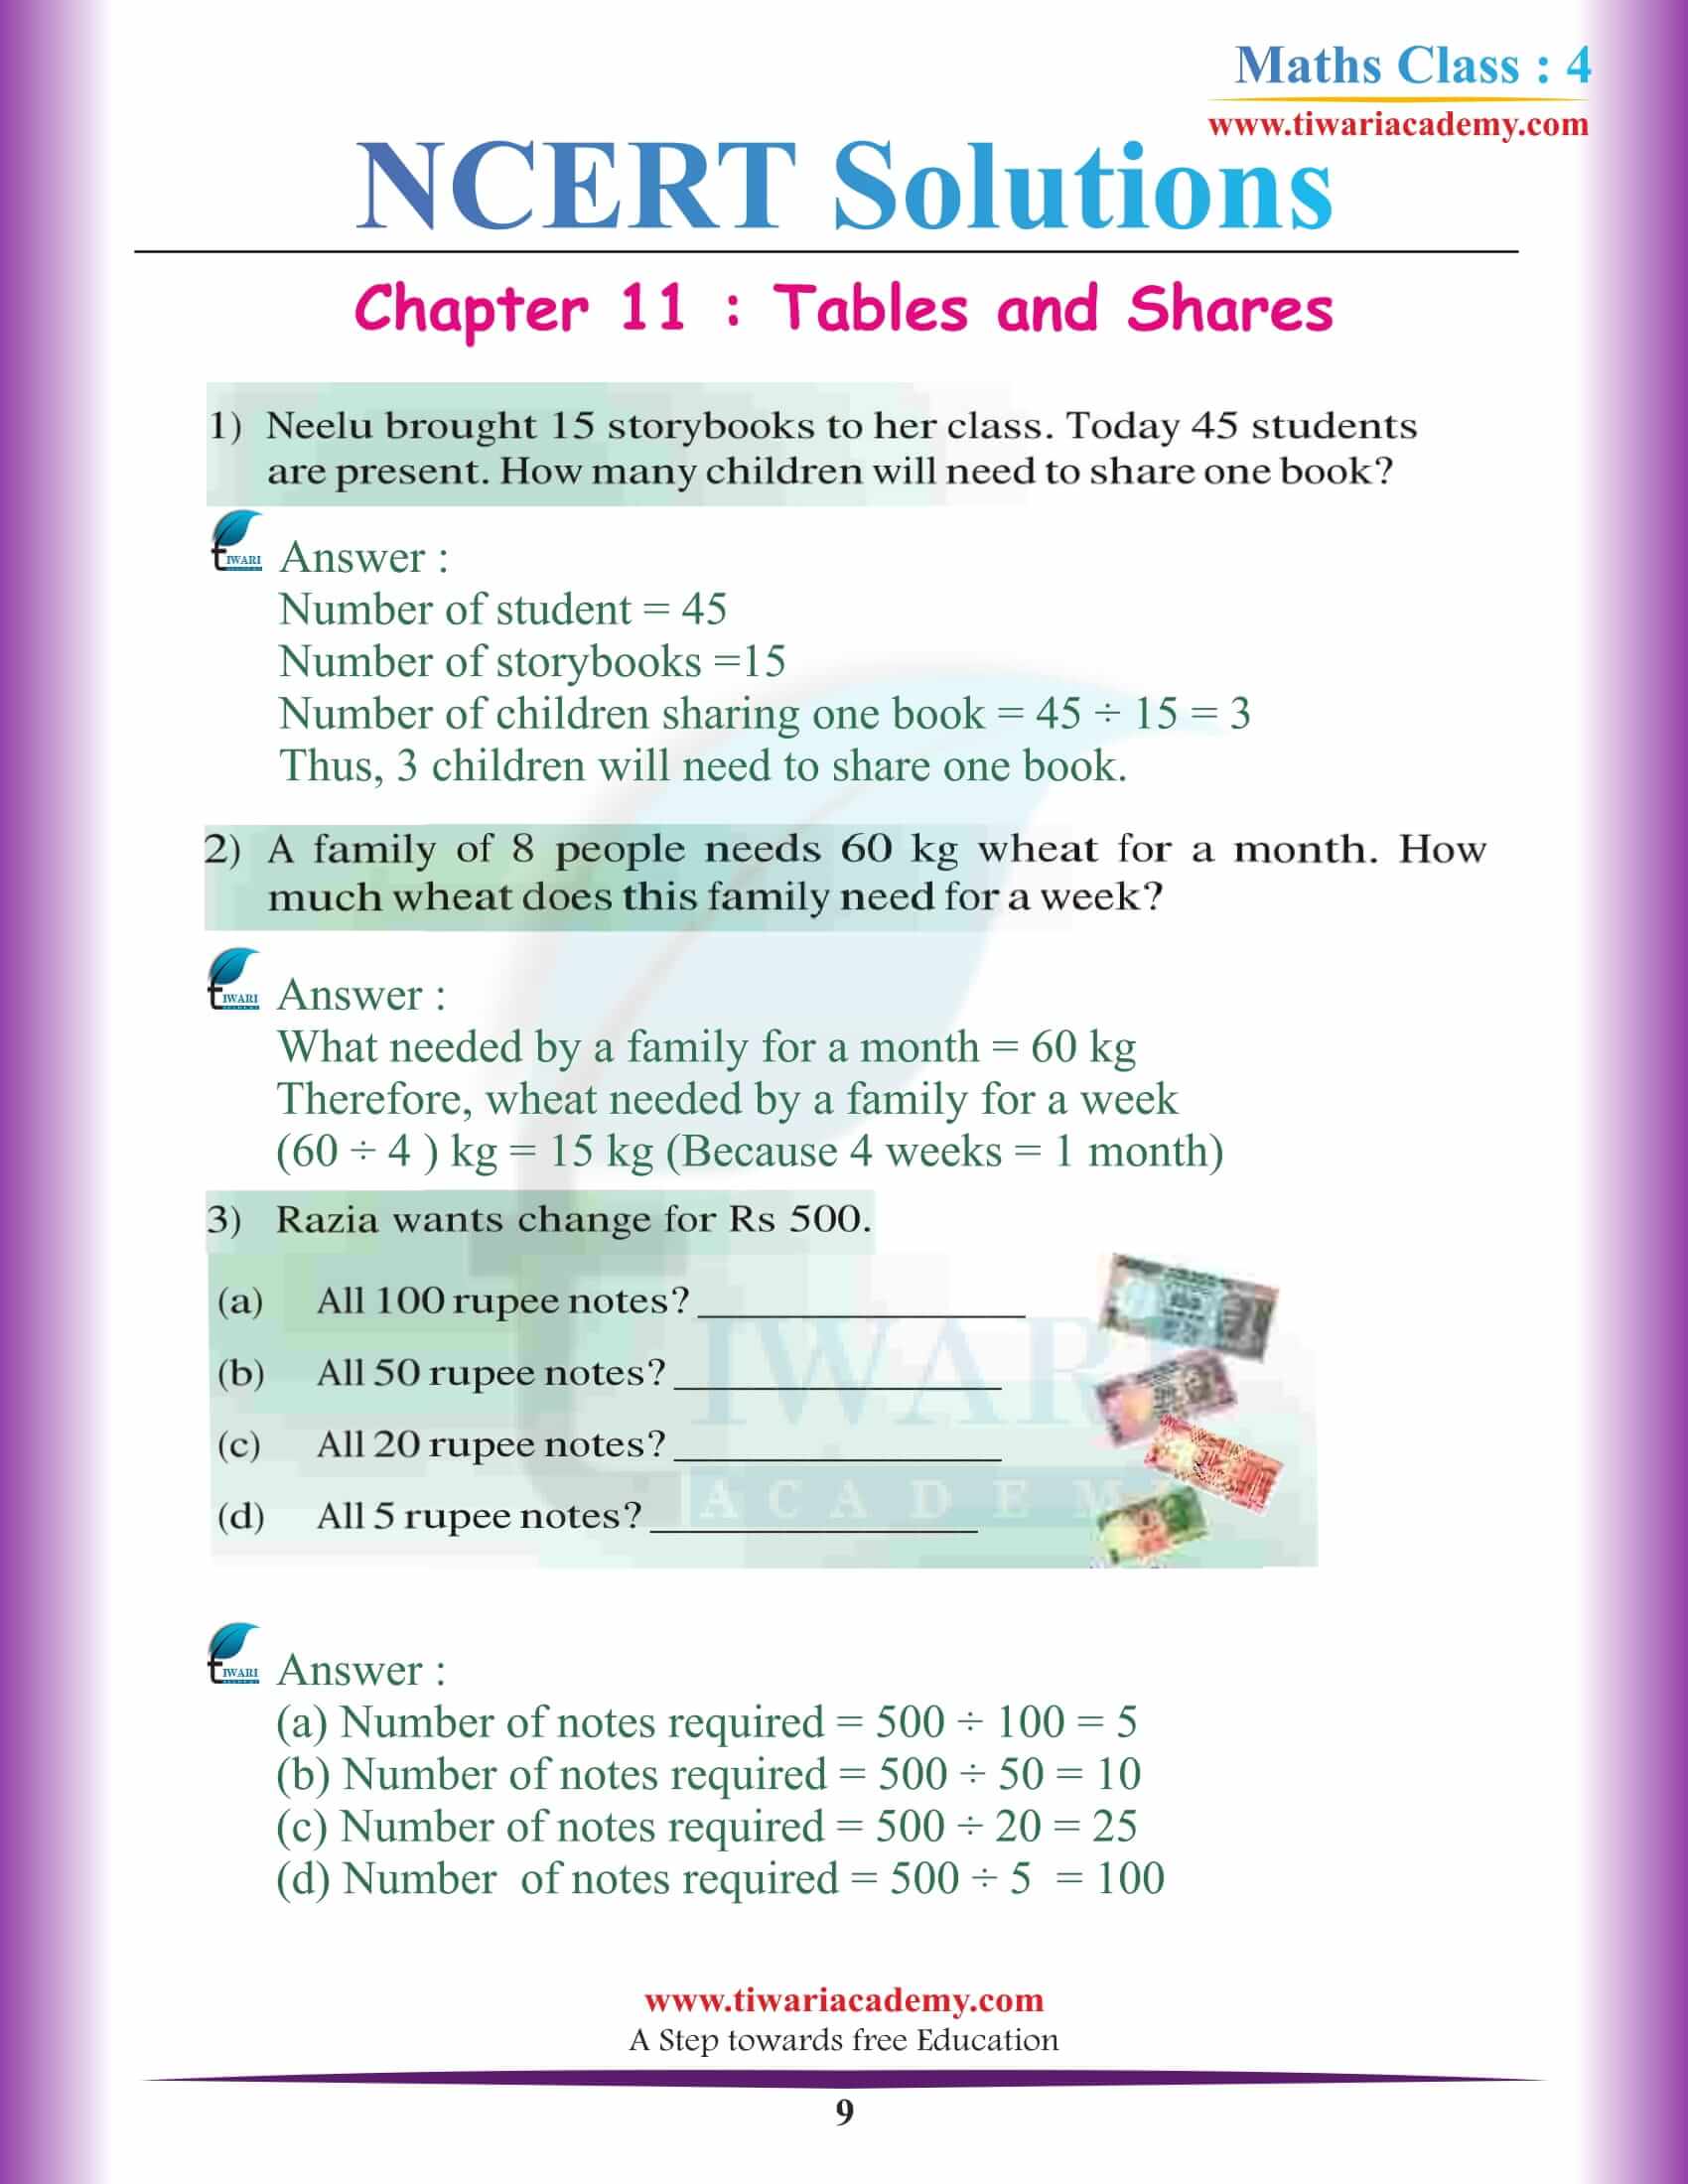 Class 4 Maths NCERT Chapter 11 Solutions